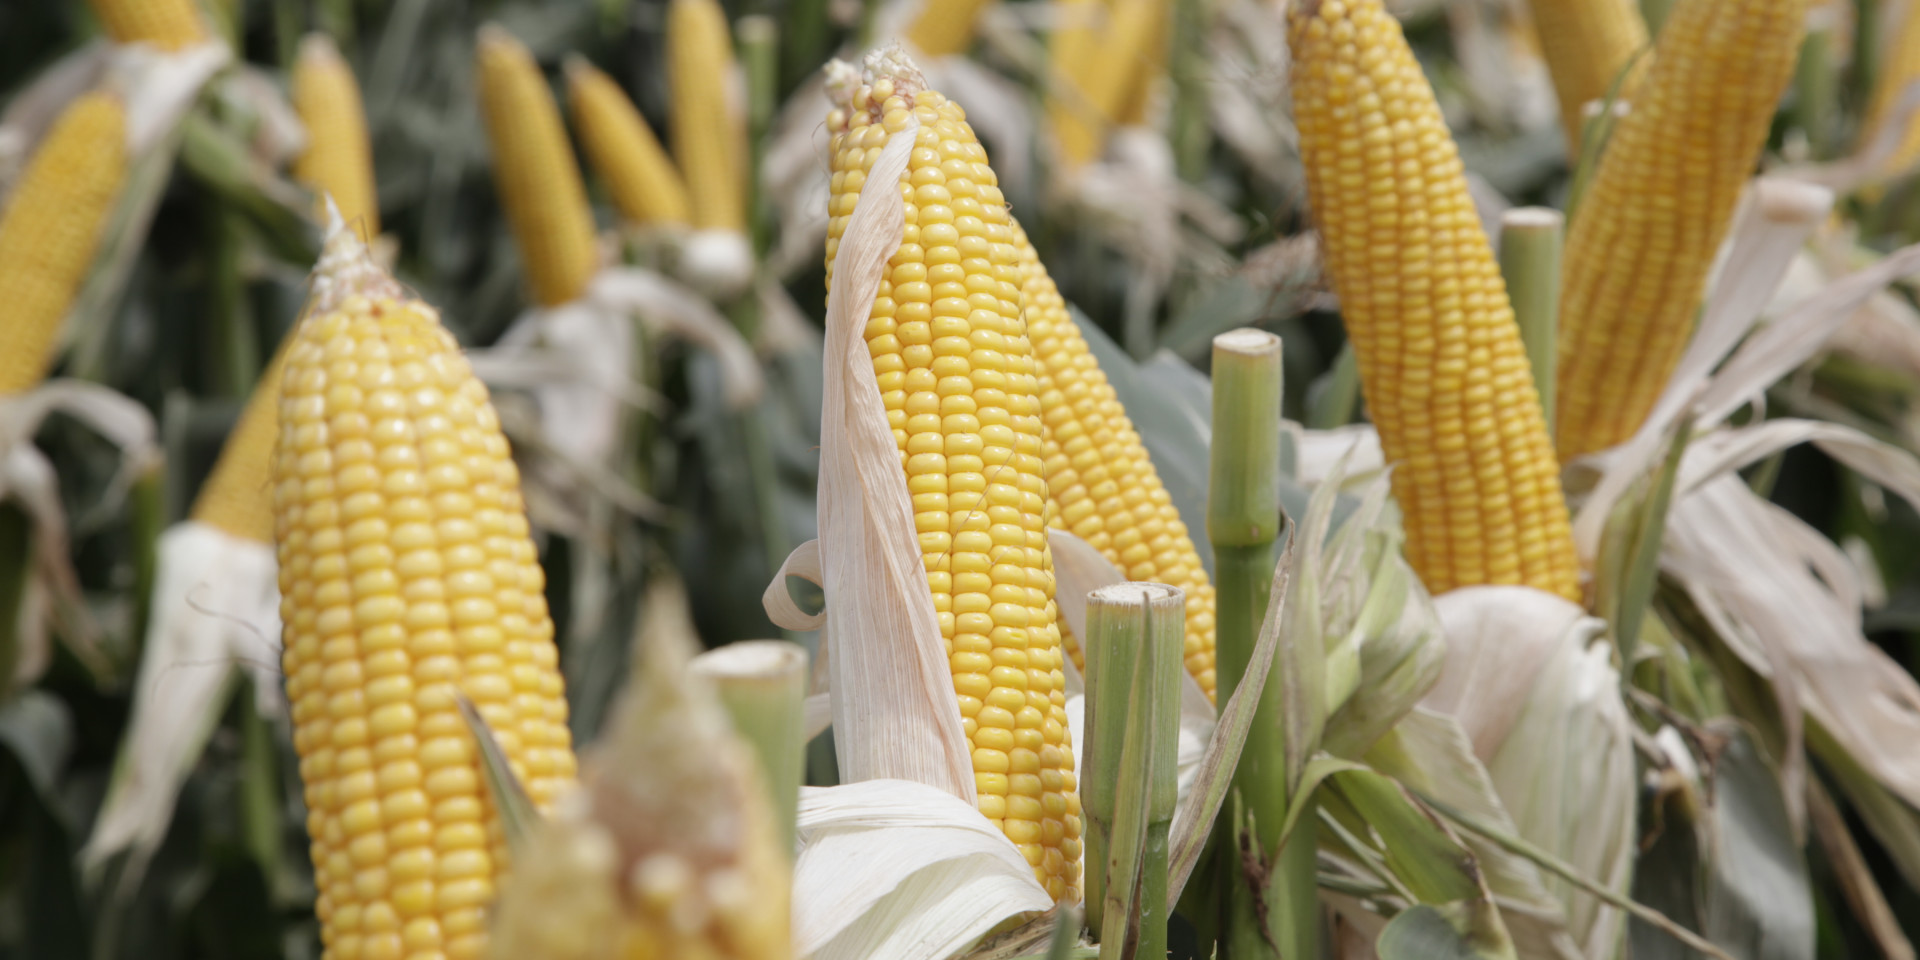 Agroindustria busca desarrollar maíz de alta productividad en Misiones y Corrientes